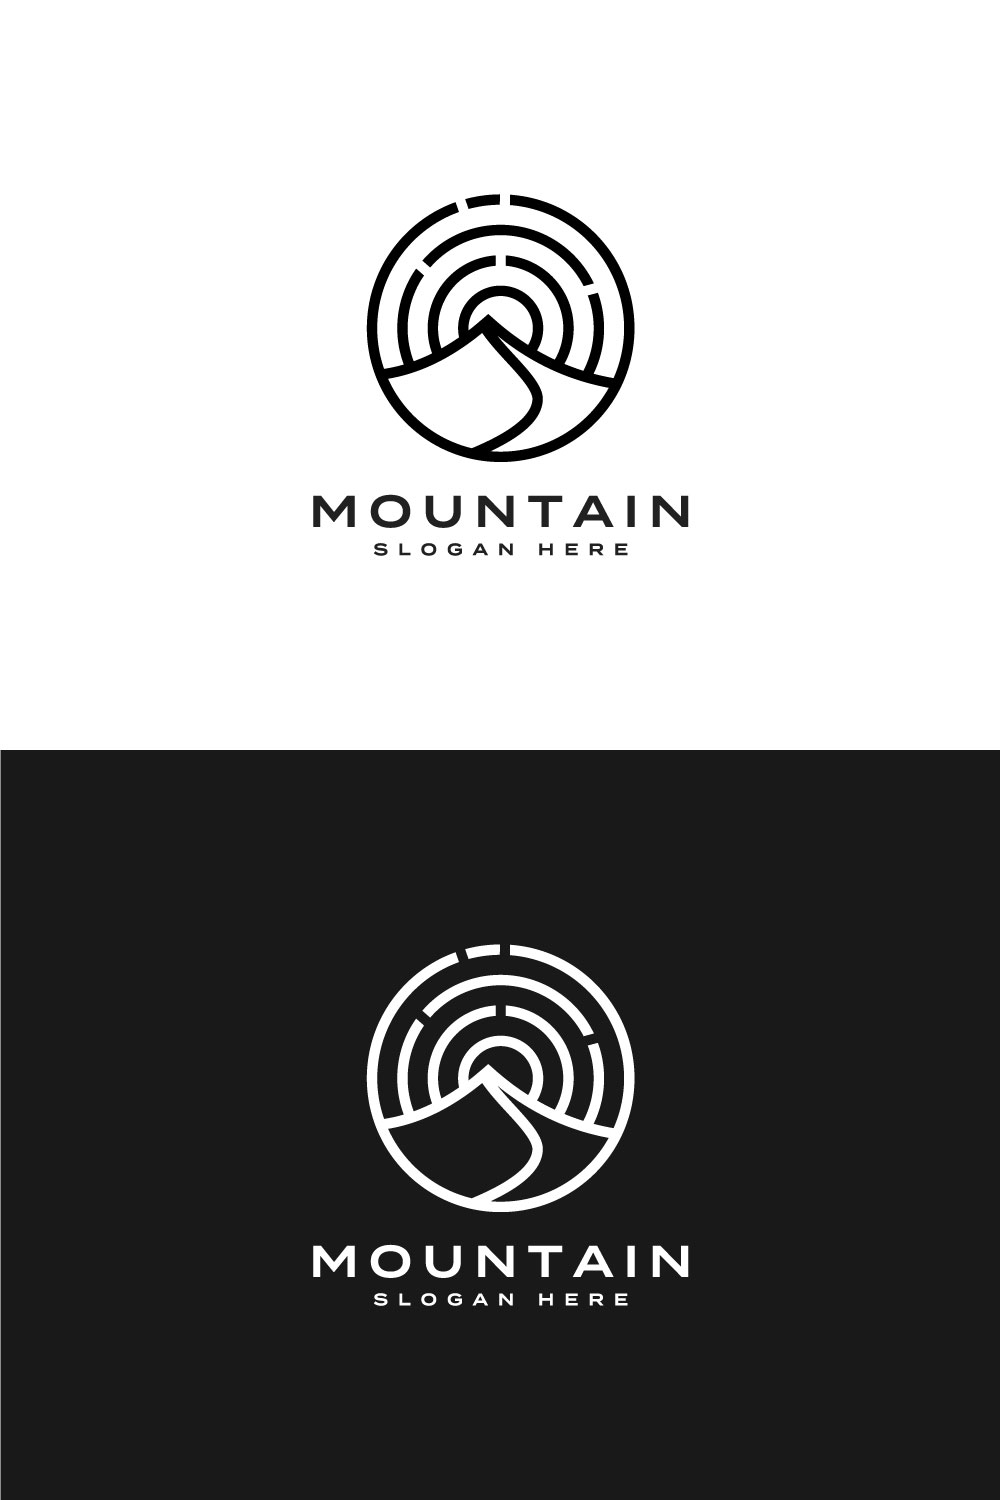 Mountain Logo Vector Design template AI pinterest.